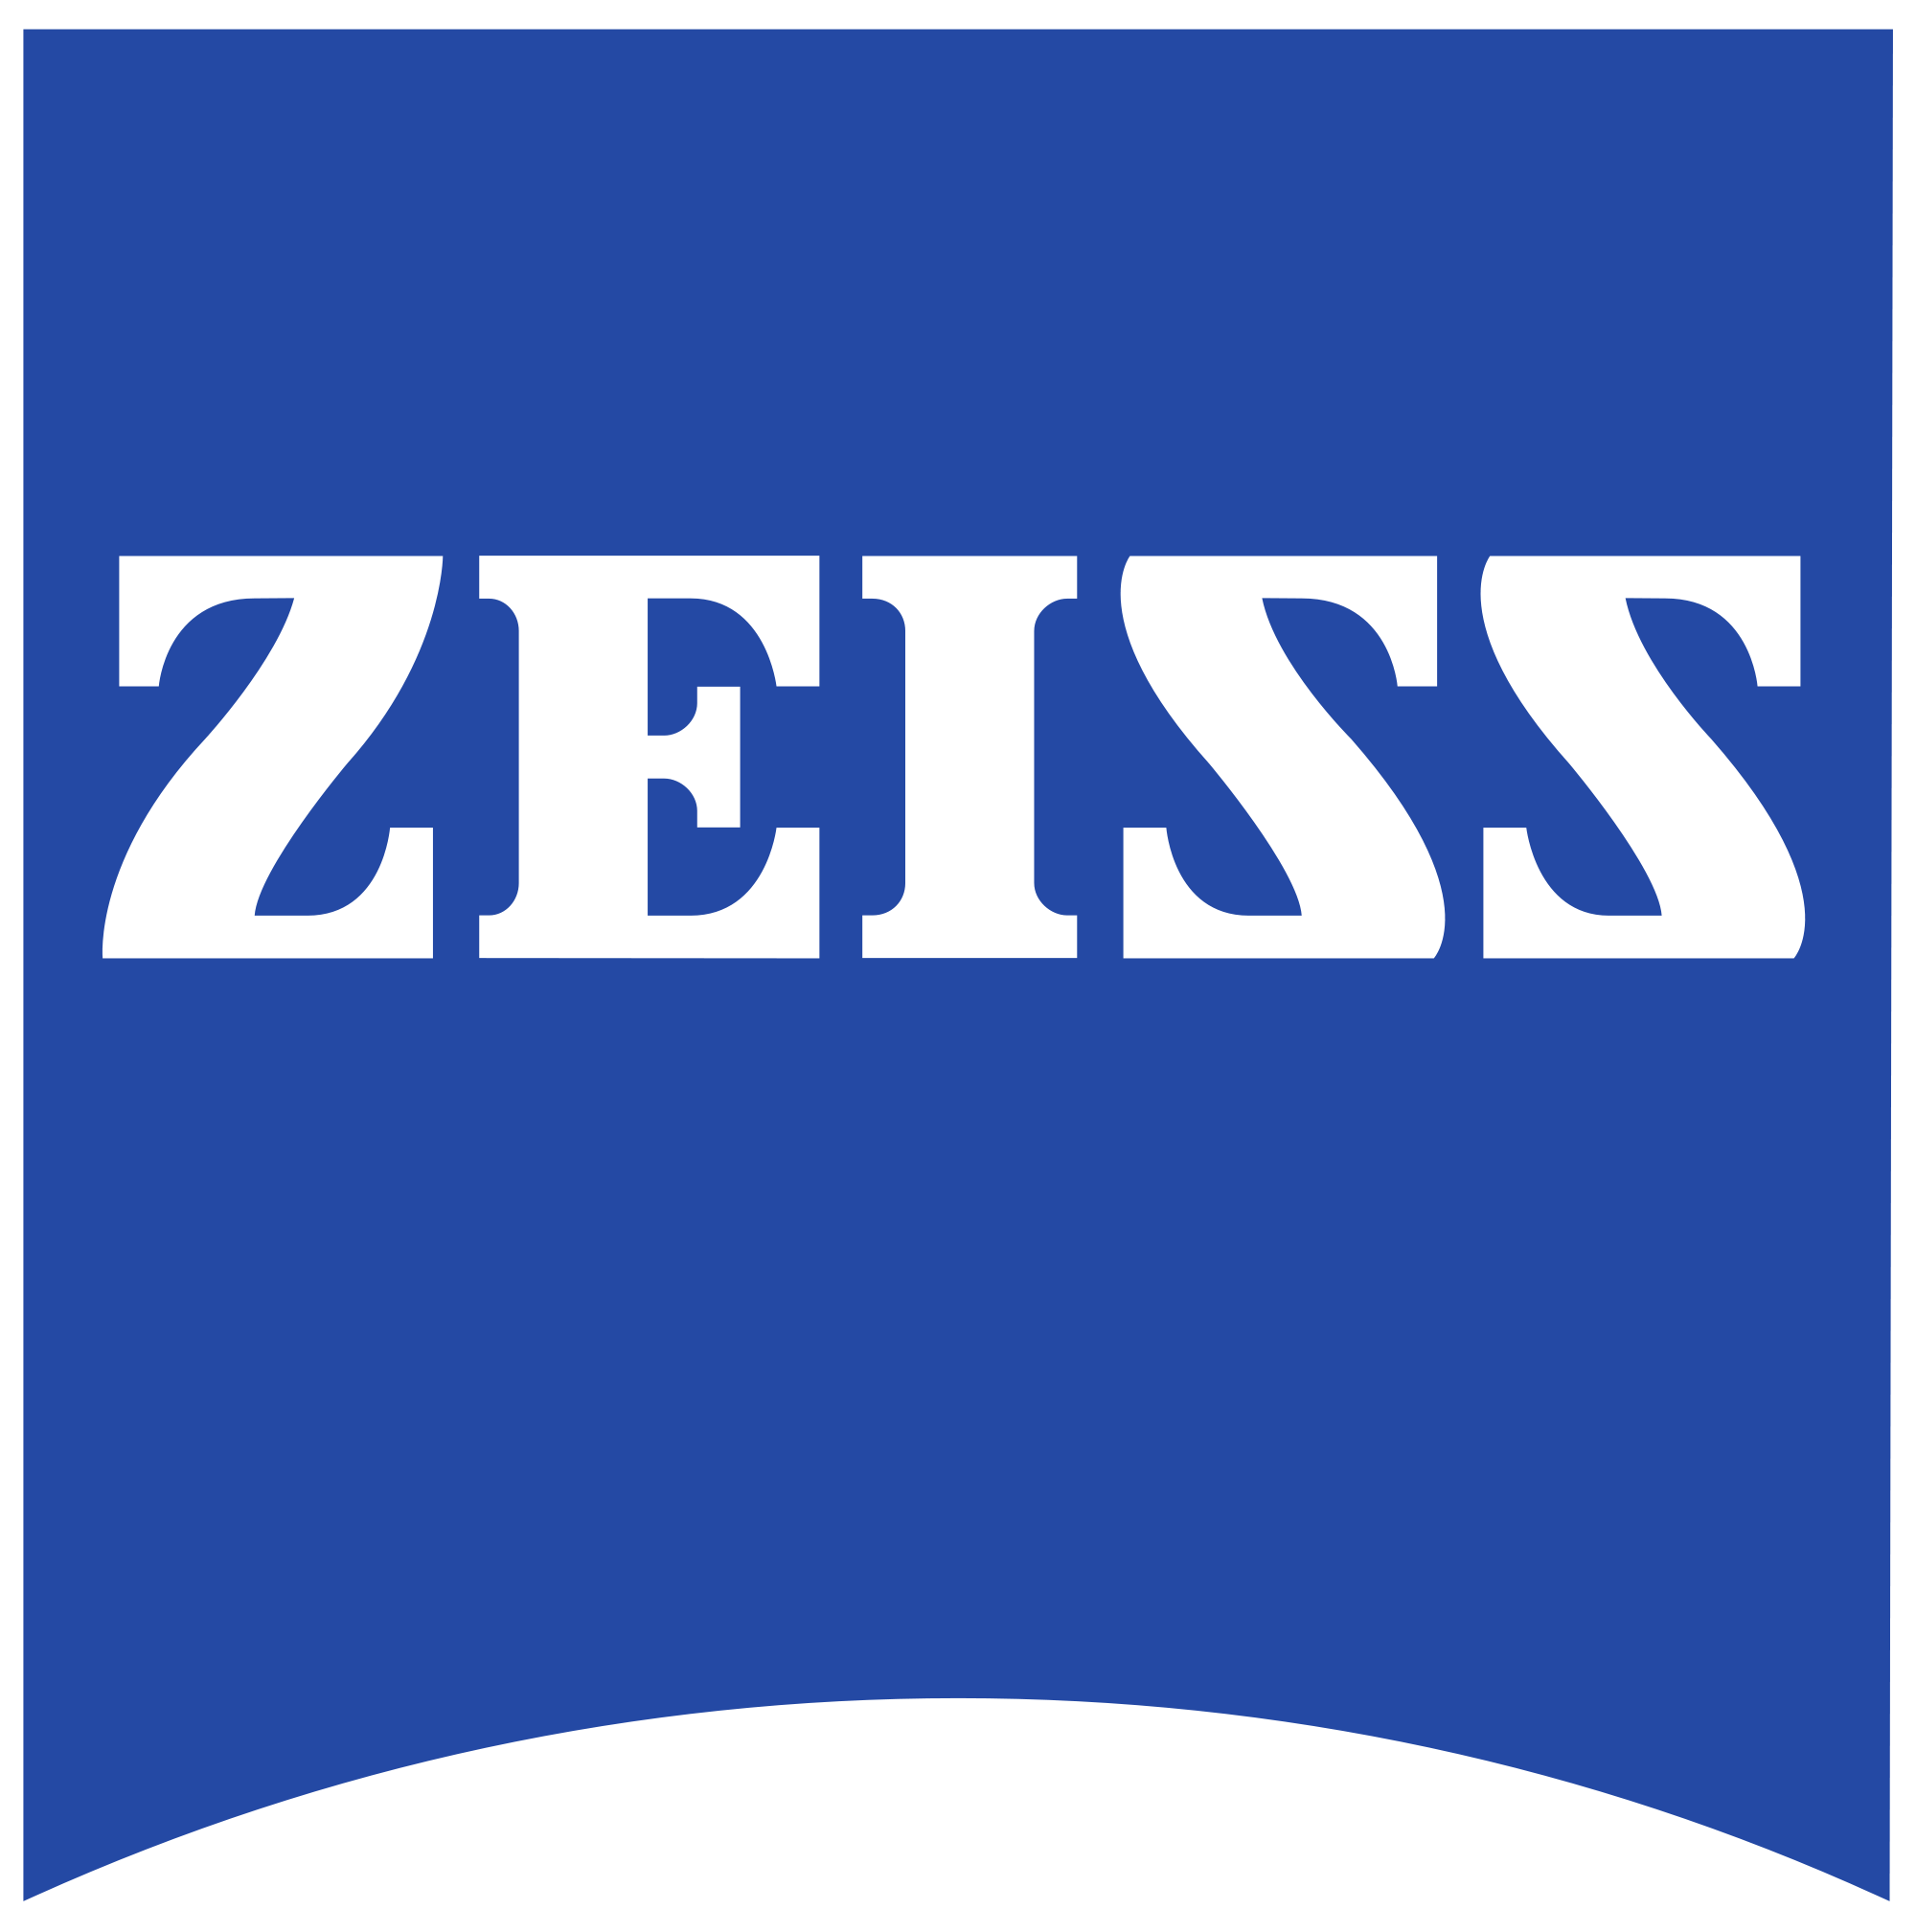 Logo van brillenglazenfabrikant Zeiss